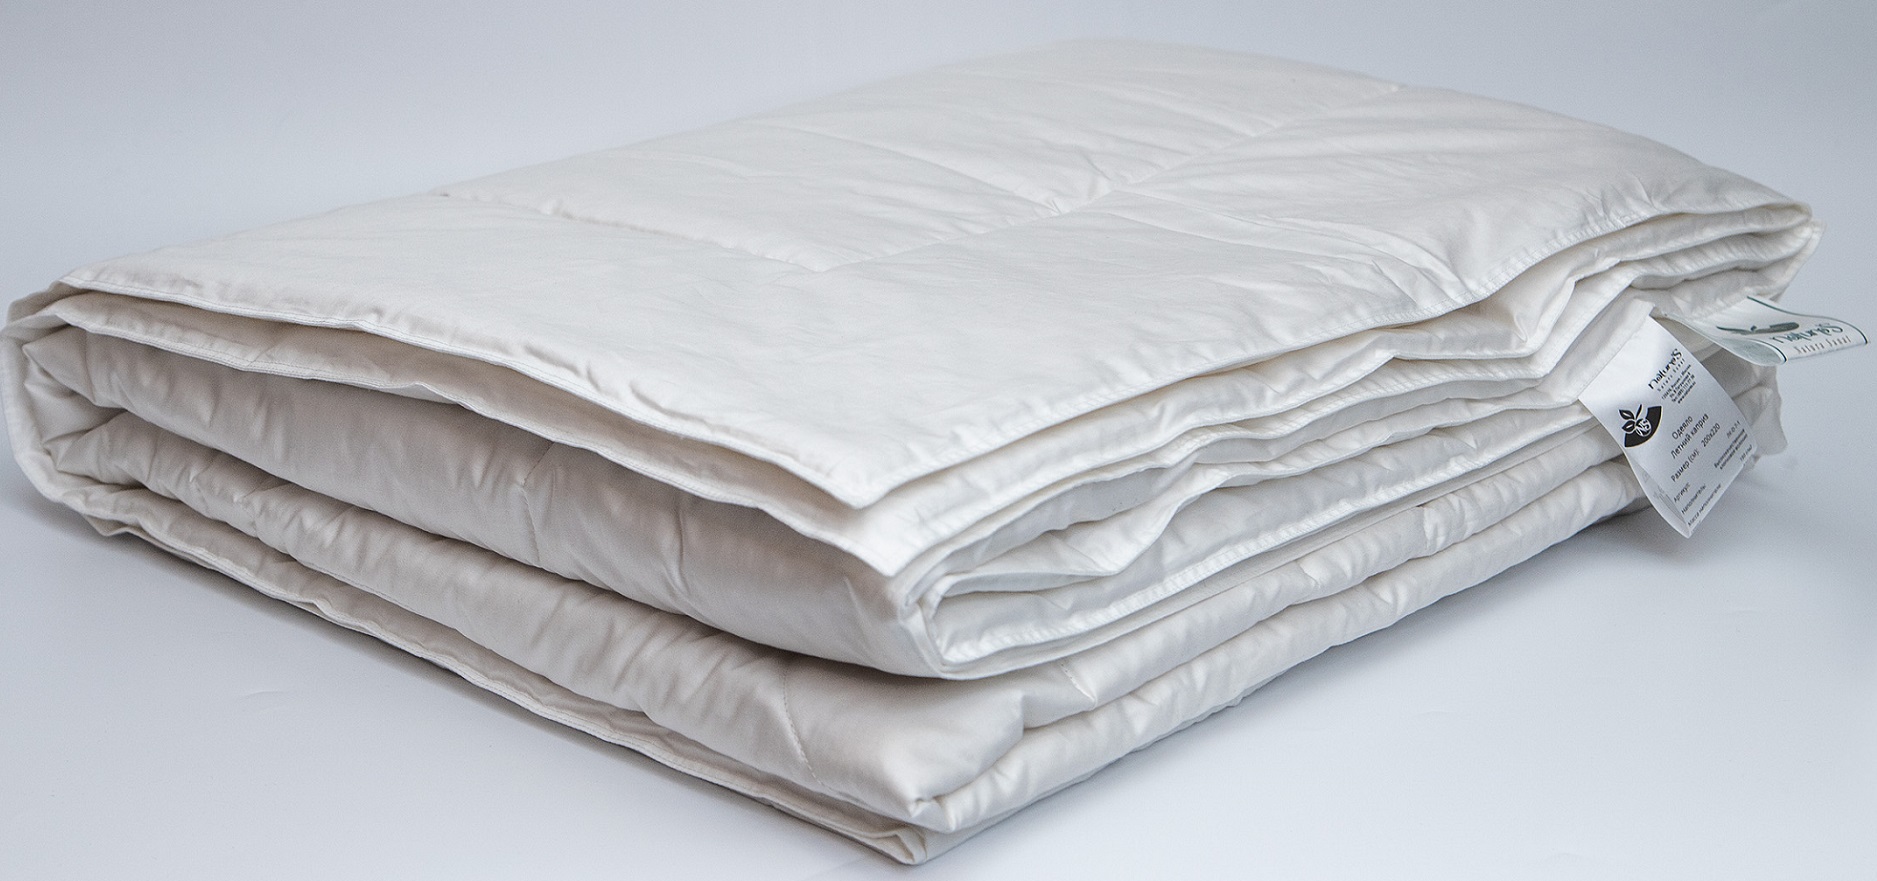 Купить одеяло из искусственного шелка, Коллекция Шелковый путь